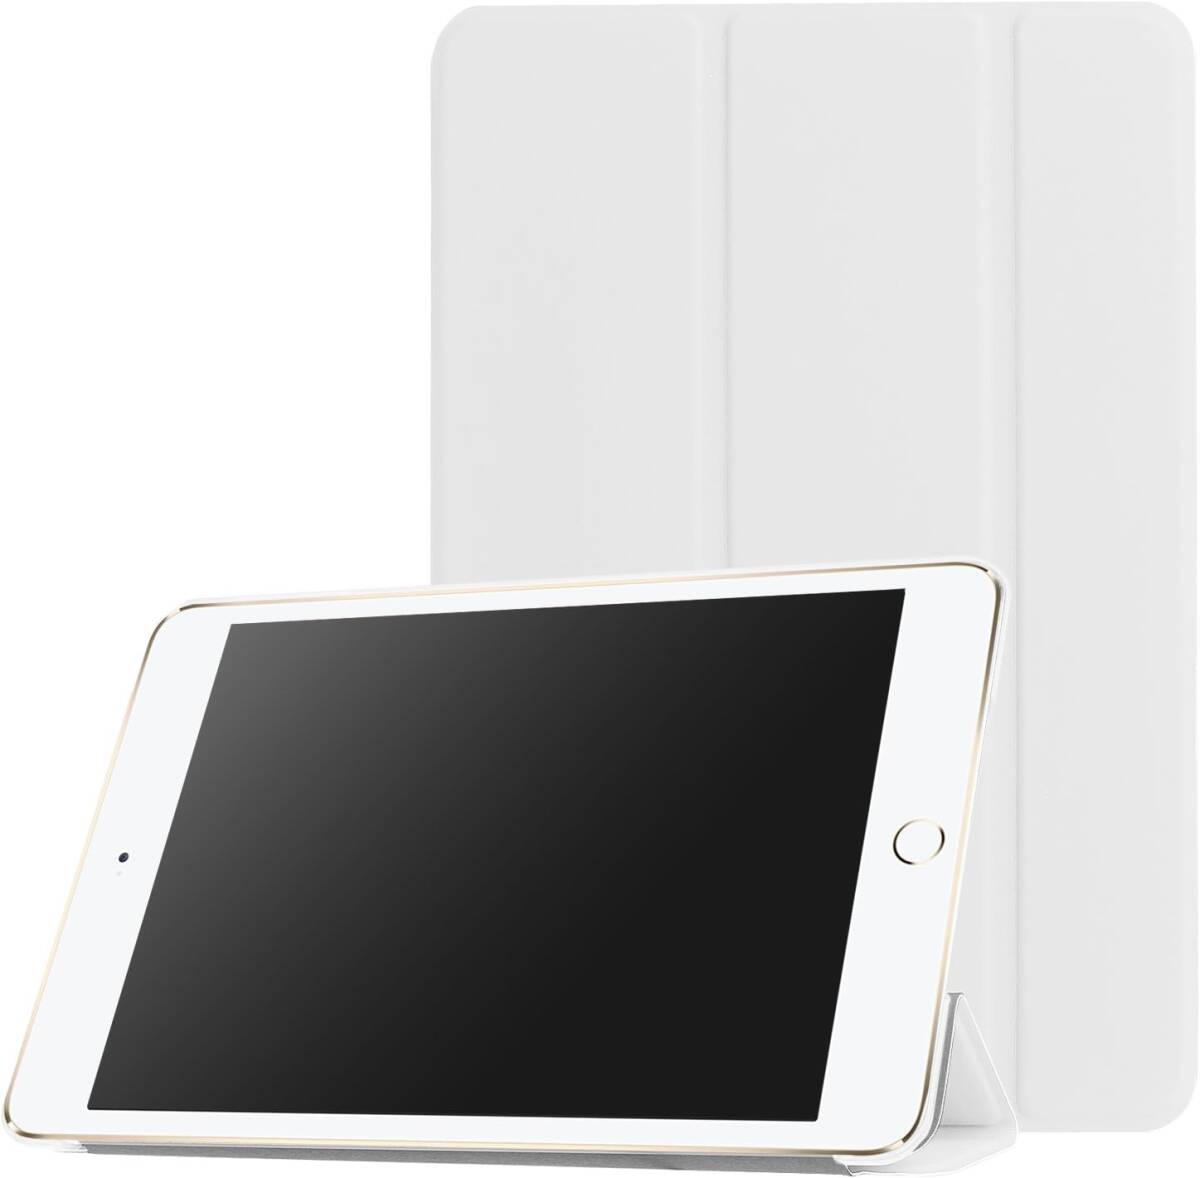 iPad mini 1/2/3 用 PU レザーカバー +ハードケース 超薄 軽量型 スタンド機能 スマートカバー ケース 三つ折 ホワイト 白の画像4